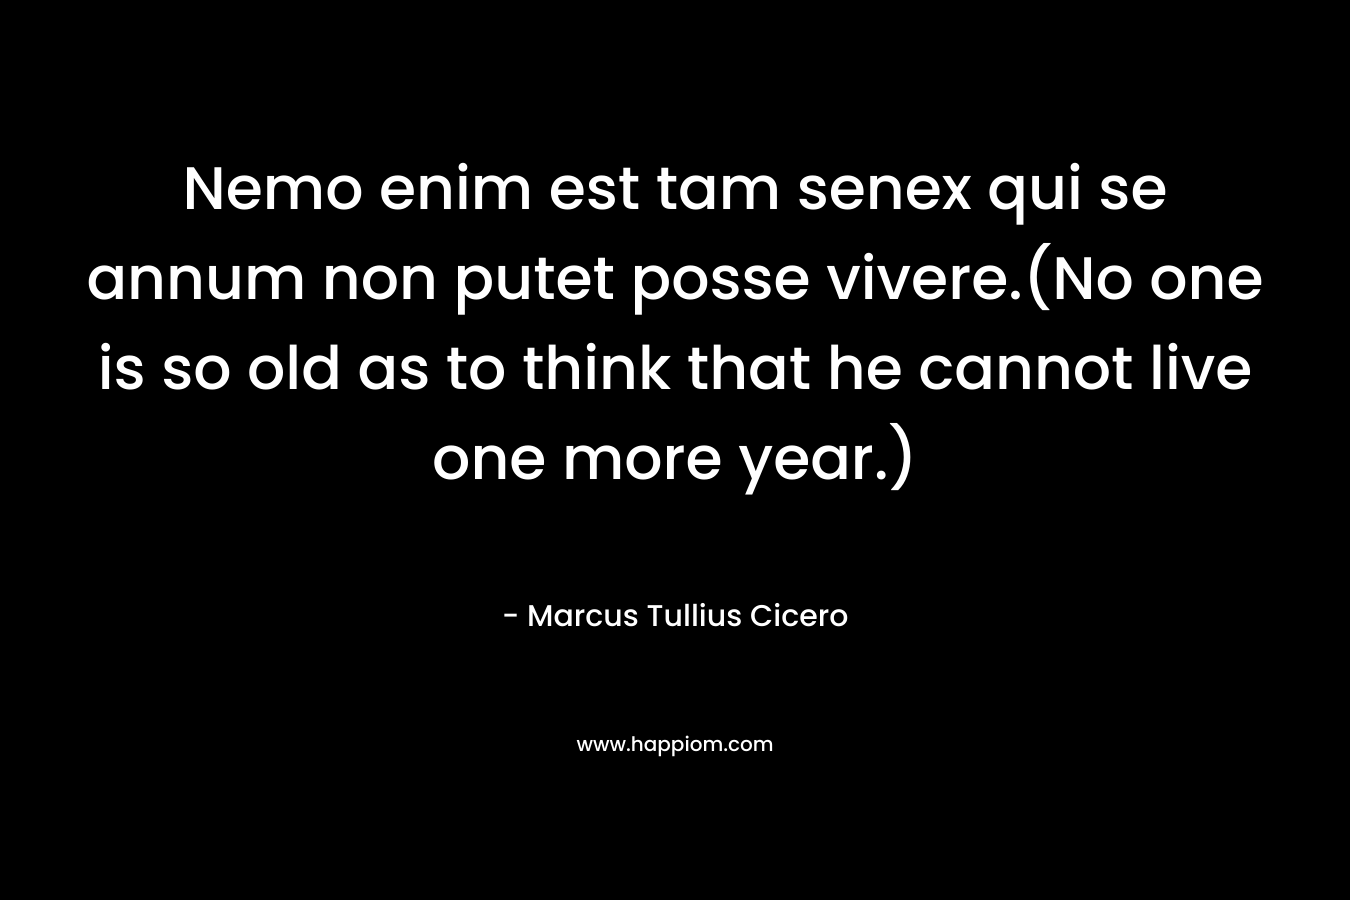 Nemo enim est tam senex qui se annum non putet posse vivere.(No one is so old as to think that he cannot live one more year.) – Marcus Tullius Cicero